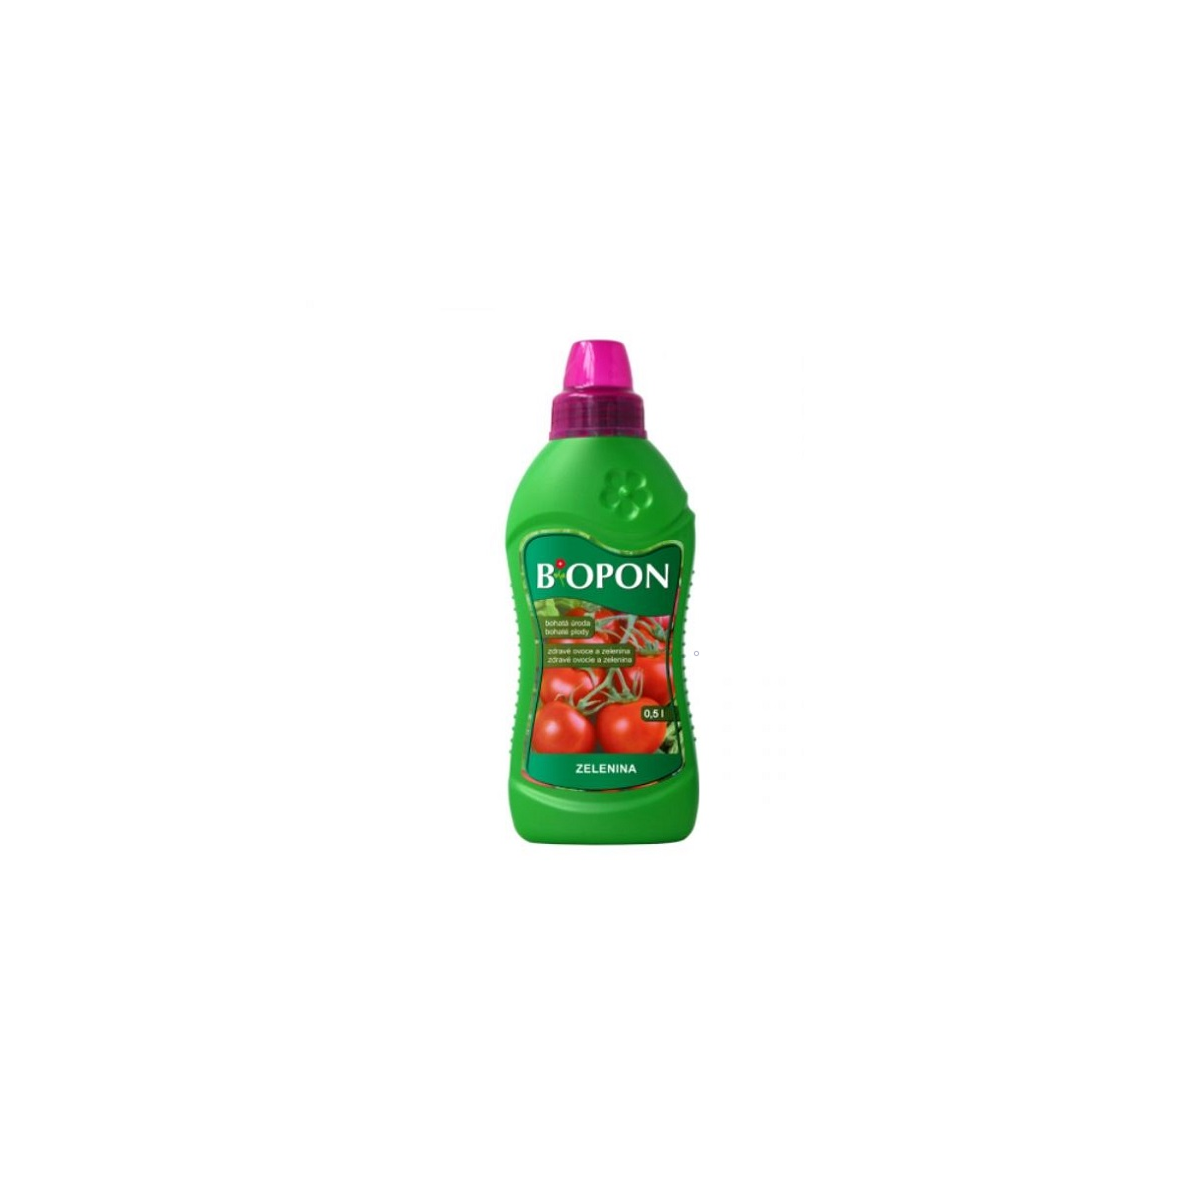 Hnojivo na zeleninu - BoPon - tekuté hnojivo - 500 ml